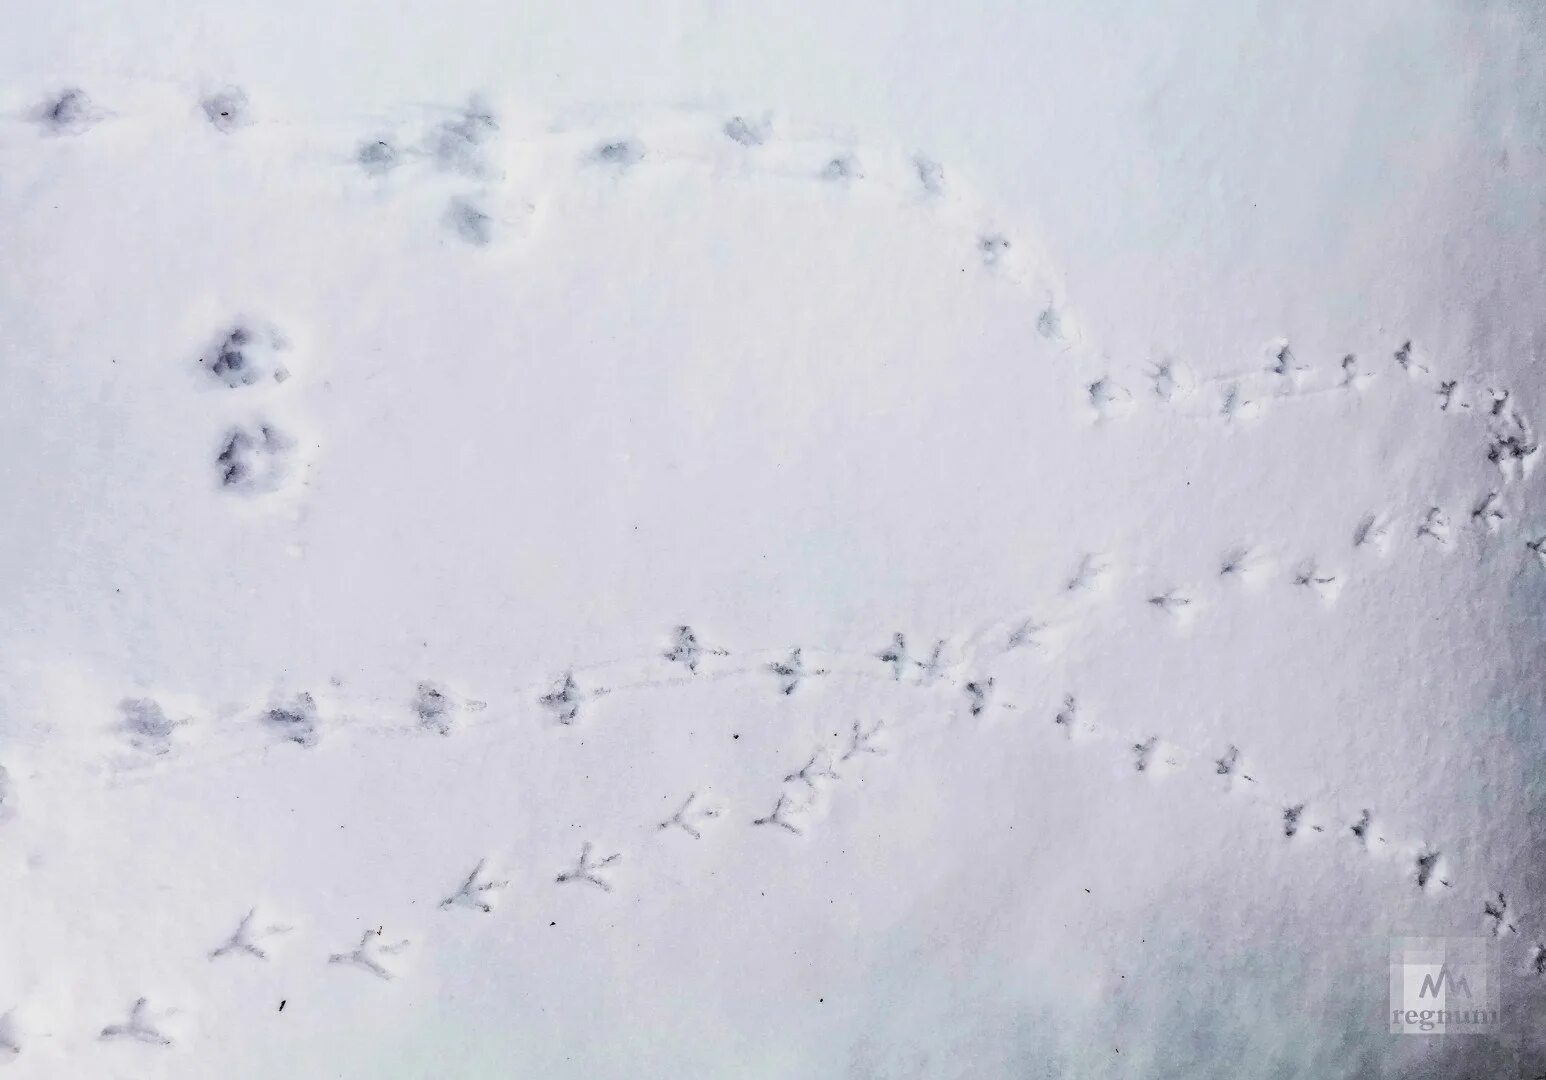 Следы голубя. Птичьи следы на снегу. Следы ворона на снегу. Следы птиц на снегу.